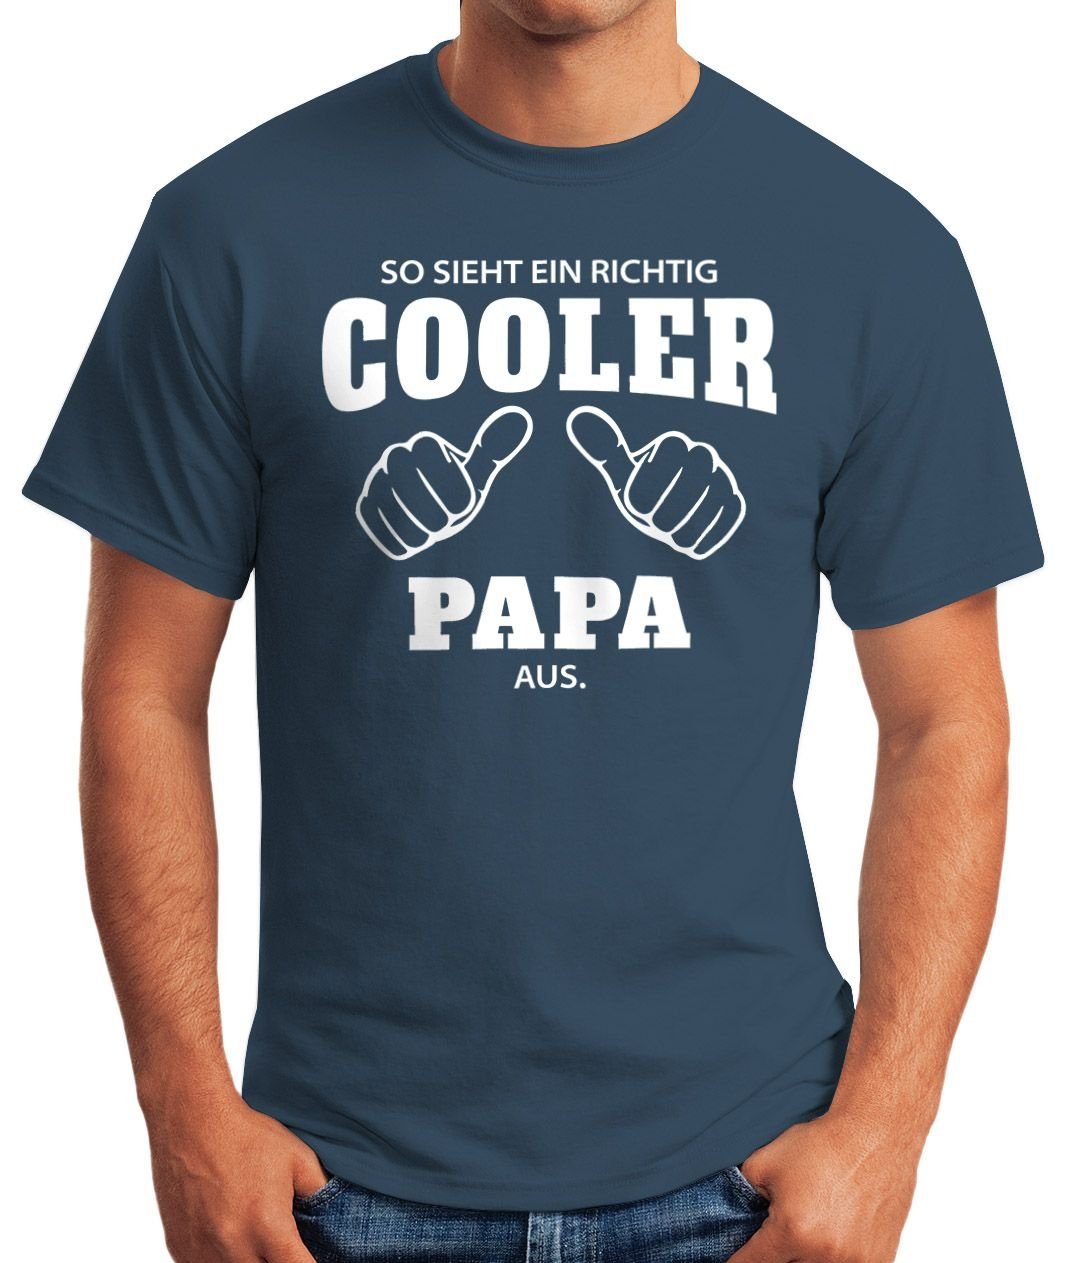 Fun-Shirt T-Shirt aus Moonworks® Papa blau Print MoonWorks ein sieht [object richtig richtig Print-Shirt cooler Object] So Herren ein mit